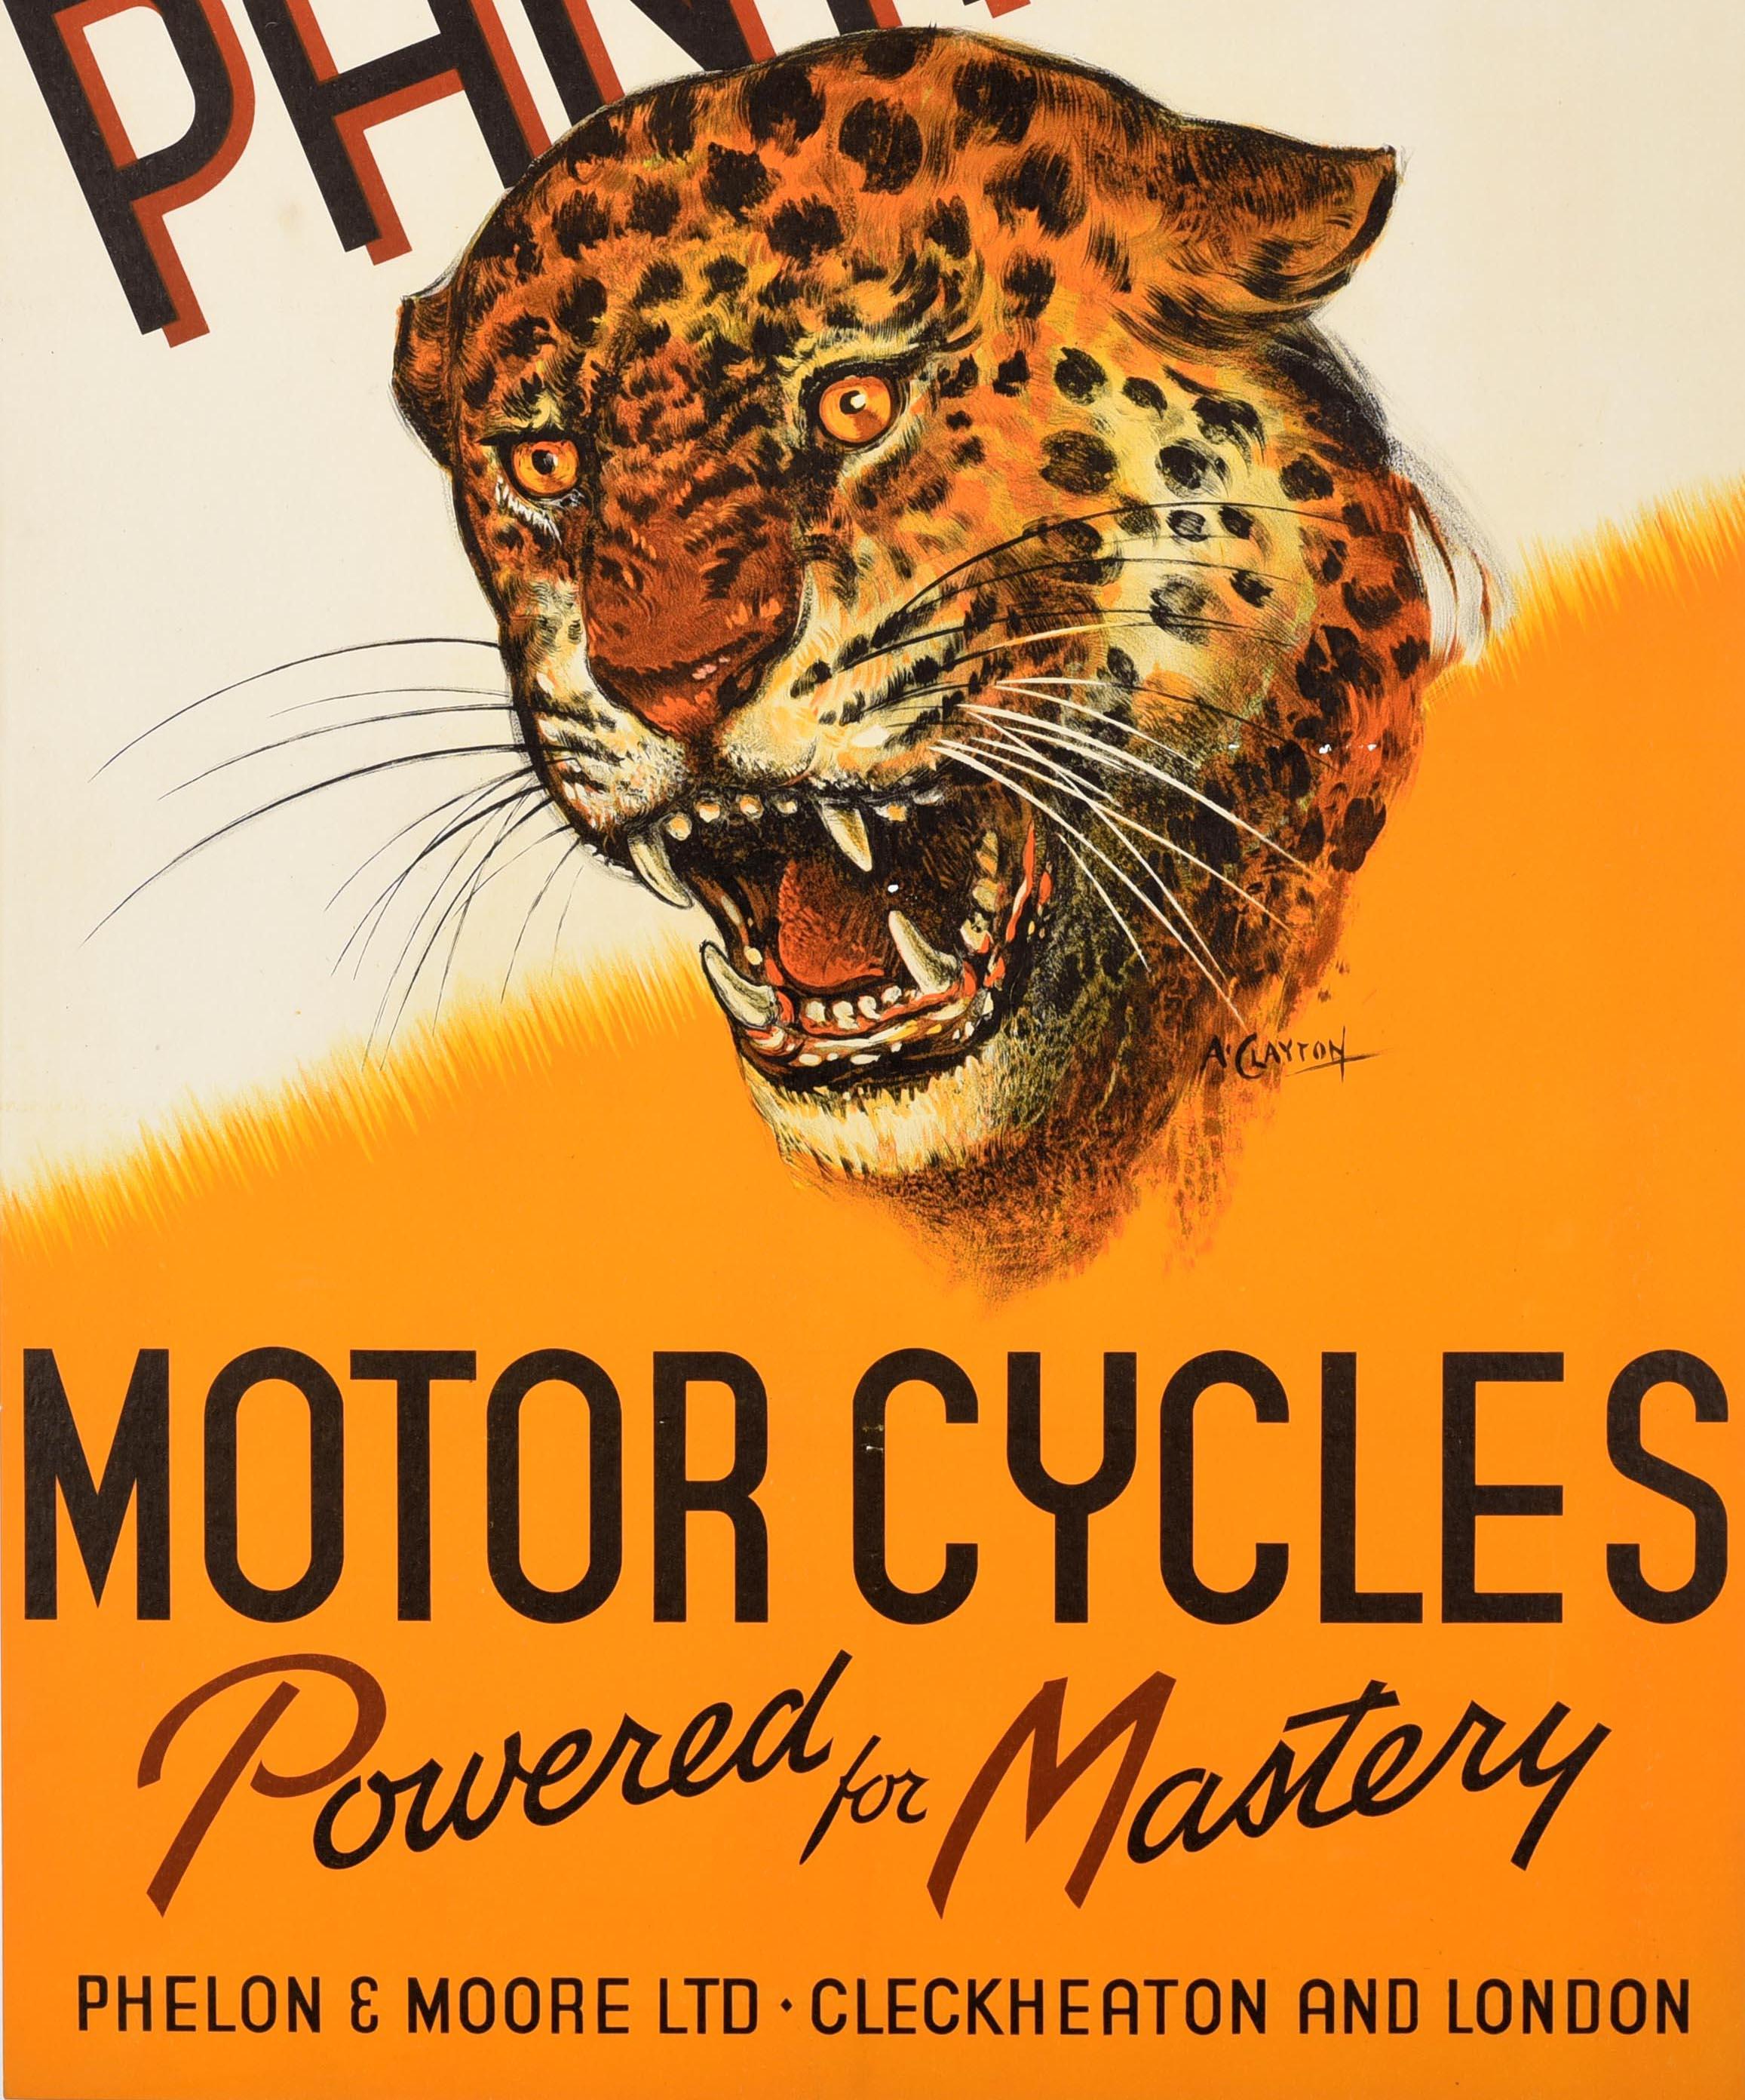 Affiche publicitaire originale vintage pour Panther Motor Cycles Powered for Mastery Phelon & Moore Ltd Cleckheaton and London. Superbe image d'un jaguar montrant ses dents sur un fond jaune et blanc dynamique, le titre en lettres noires et rouge